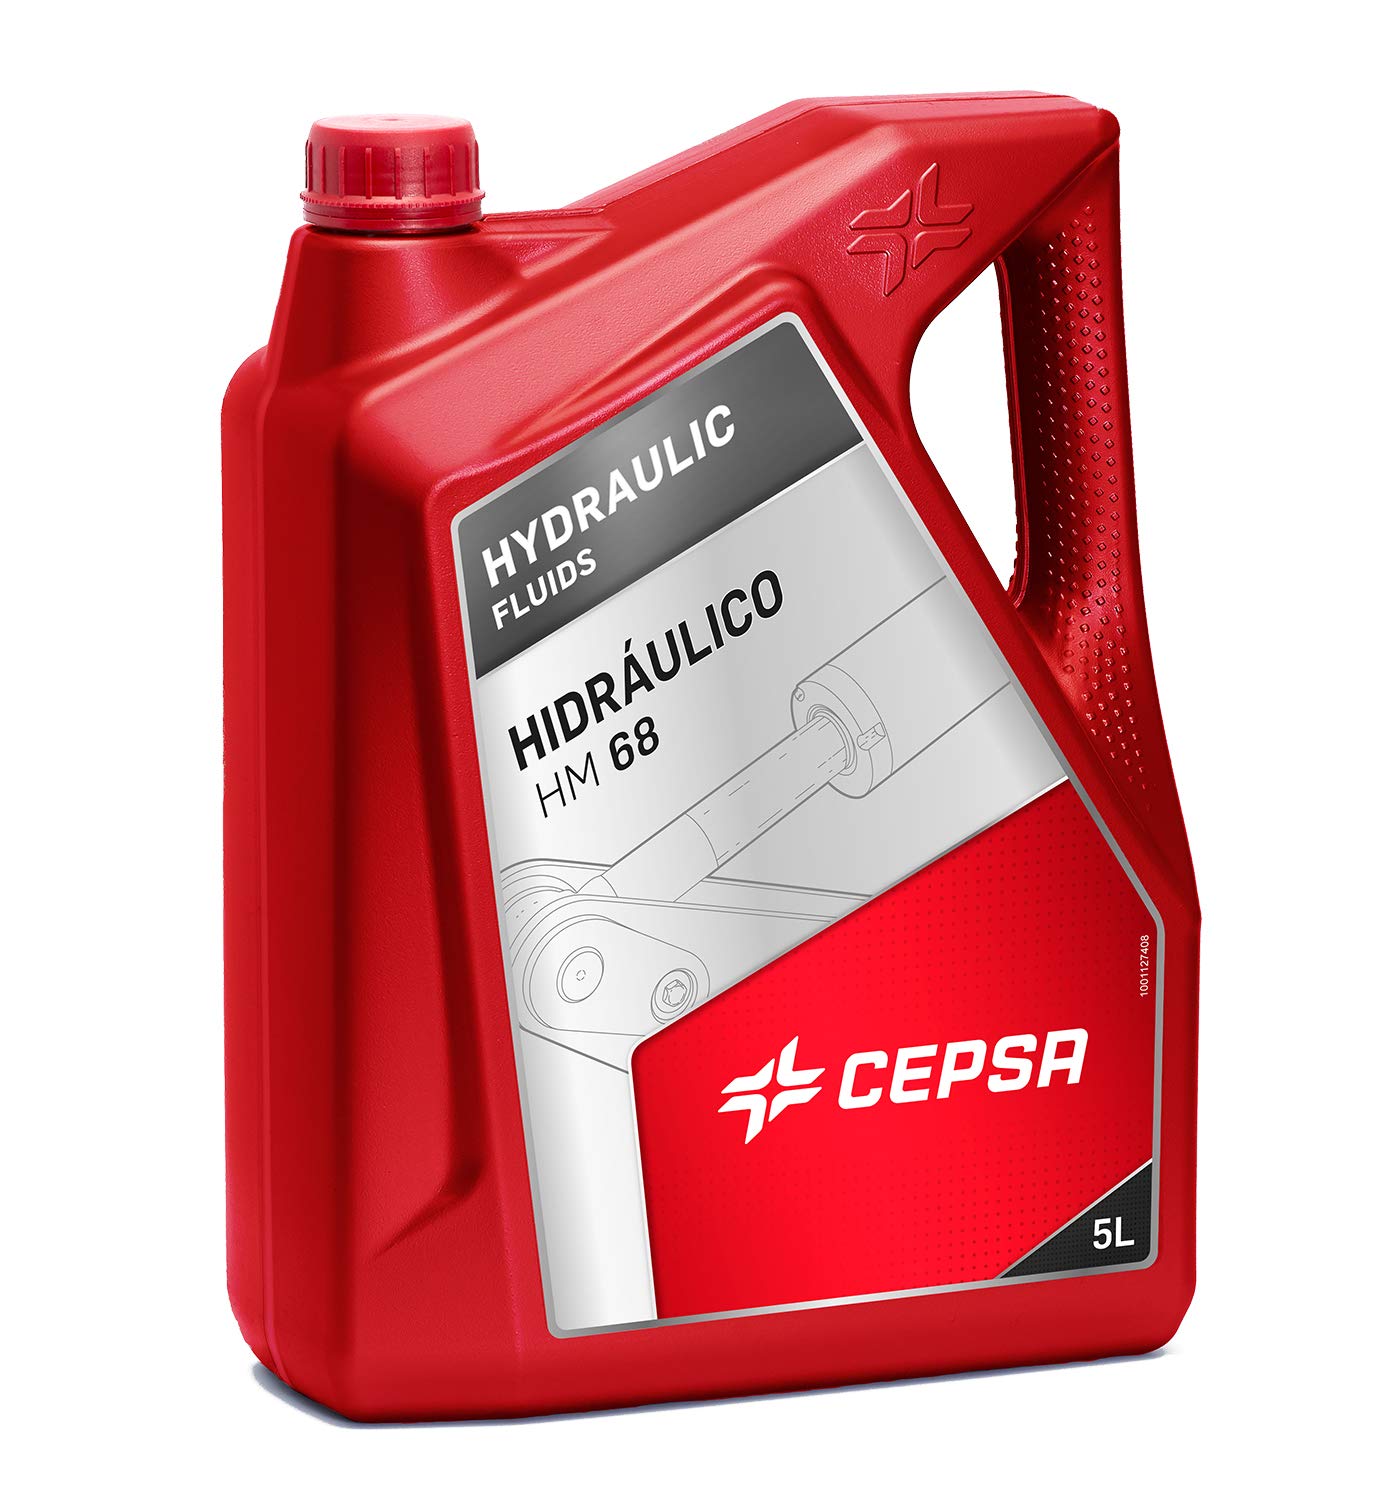 CEPSA 640413072 Mineralöl für Hydrauliksysteme HIDRAULICO HM 68, 5 Liter von CEPSA